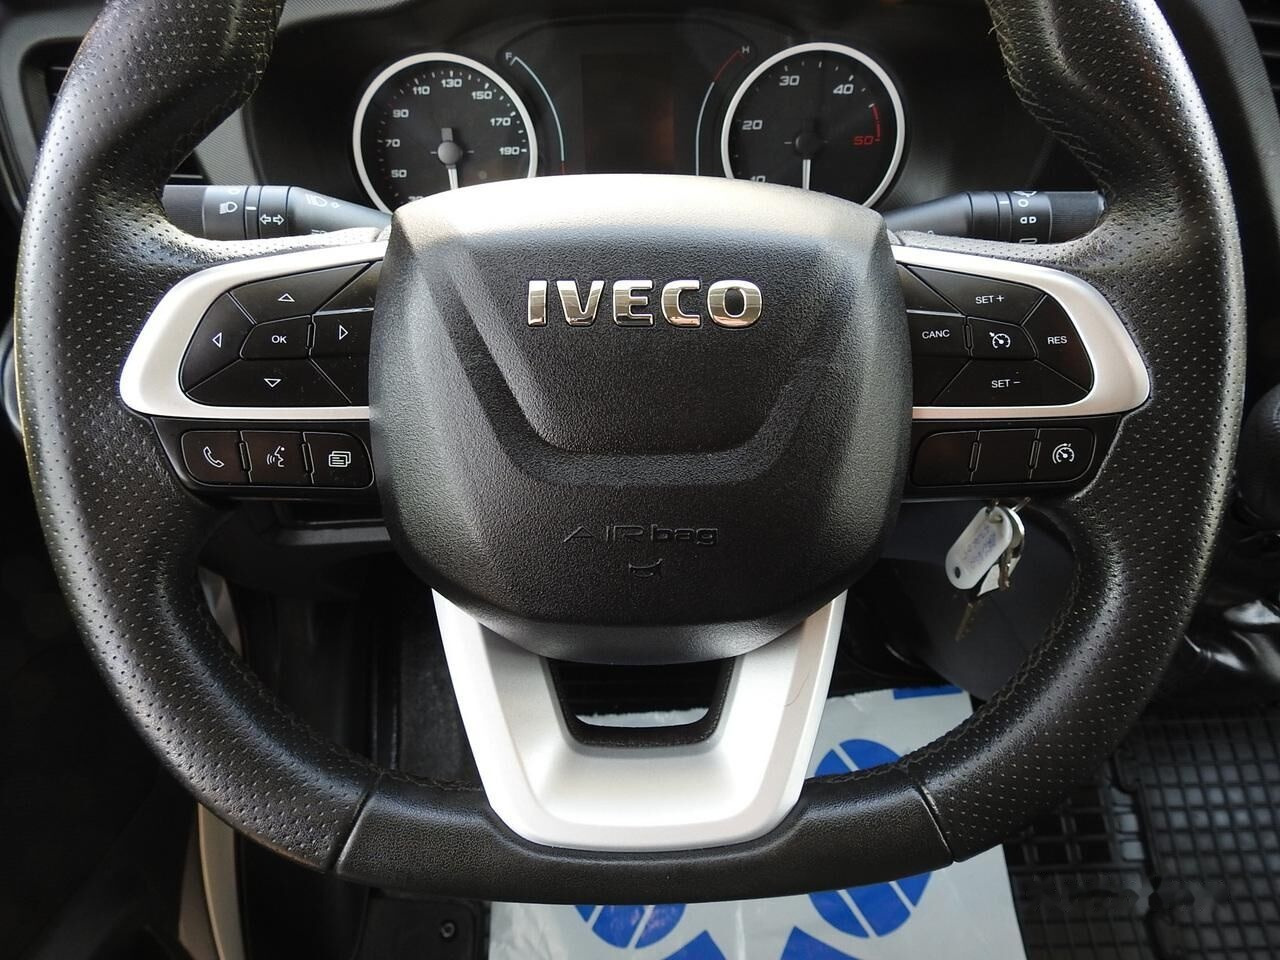 Dostavno vozilo s ceradom IVECO Daily Curtain side: slika Dostavno vozilo s ceradom IVECO Daily Curtain side